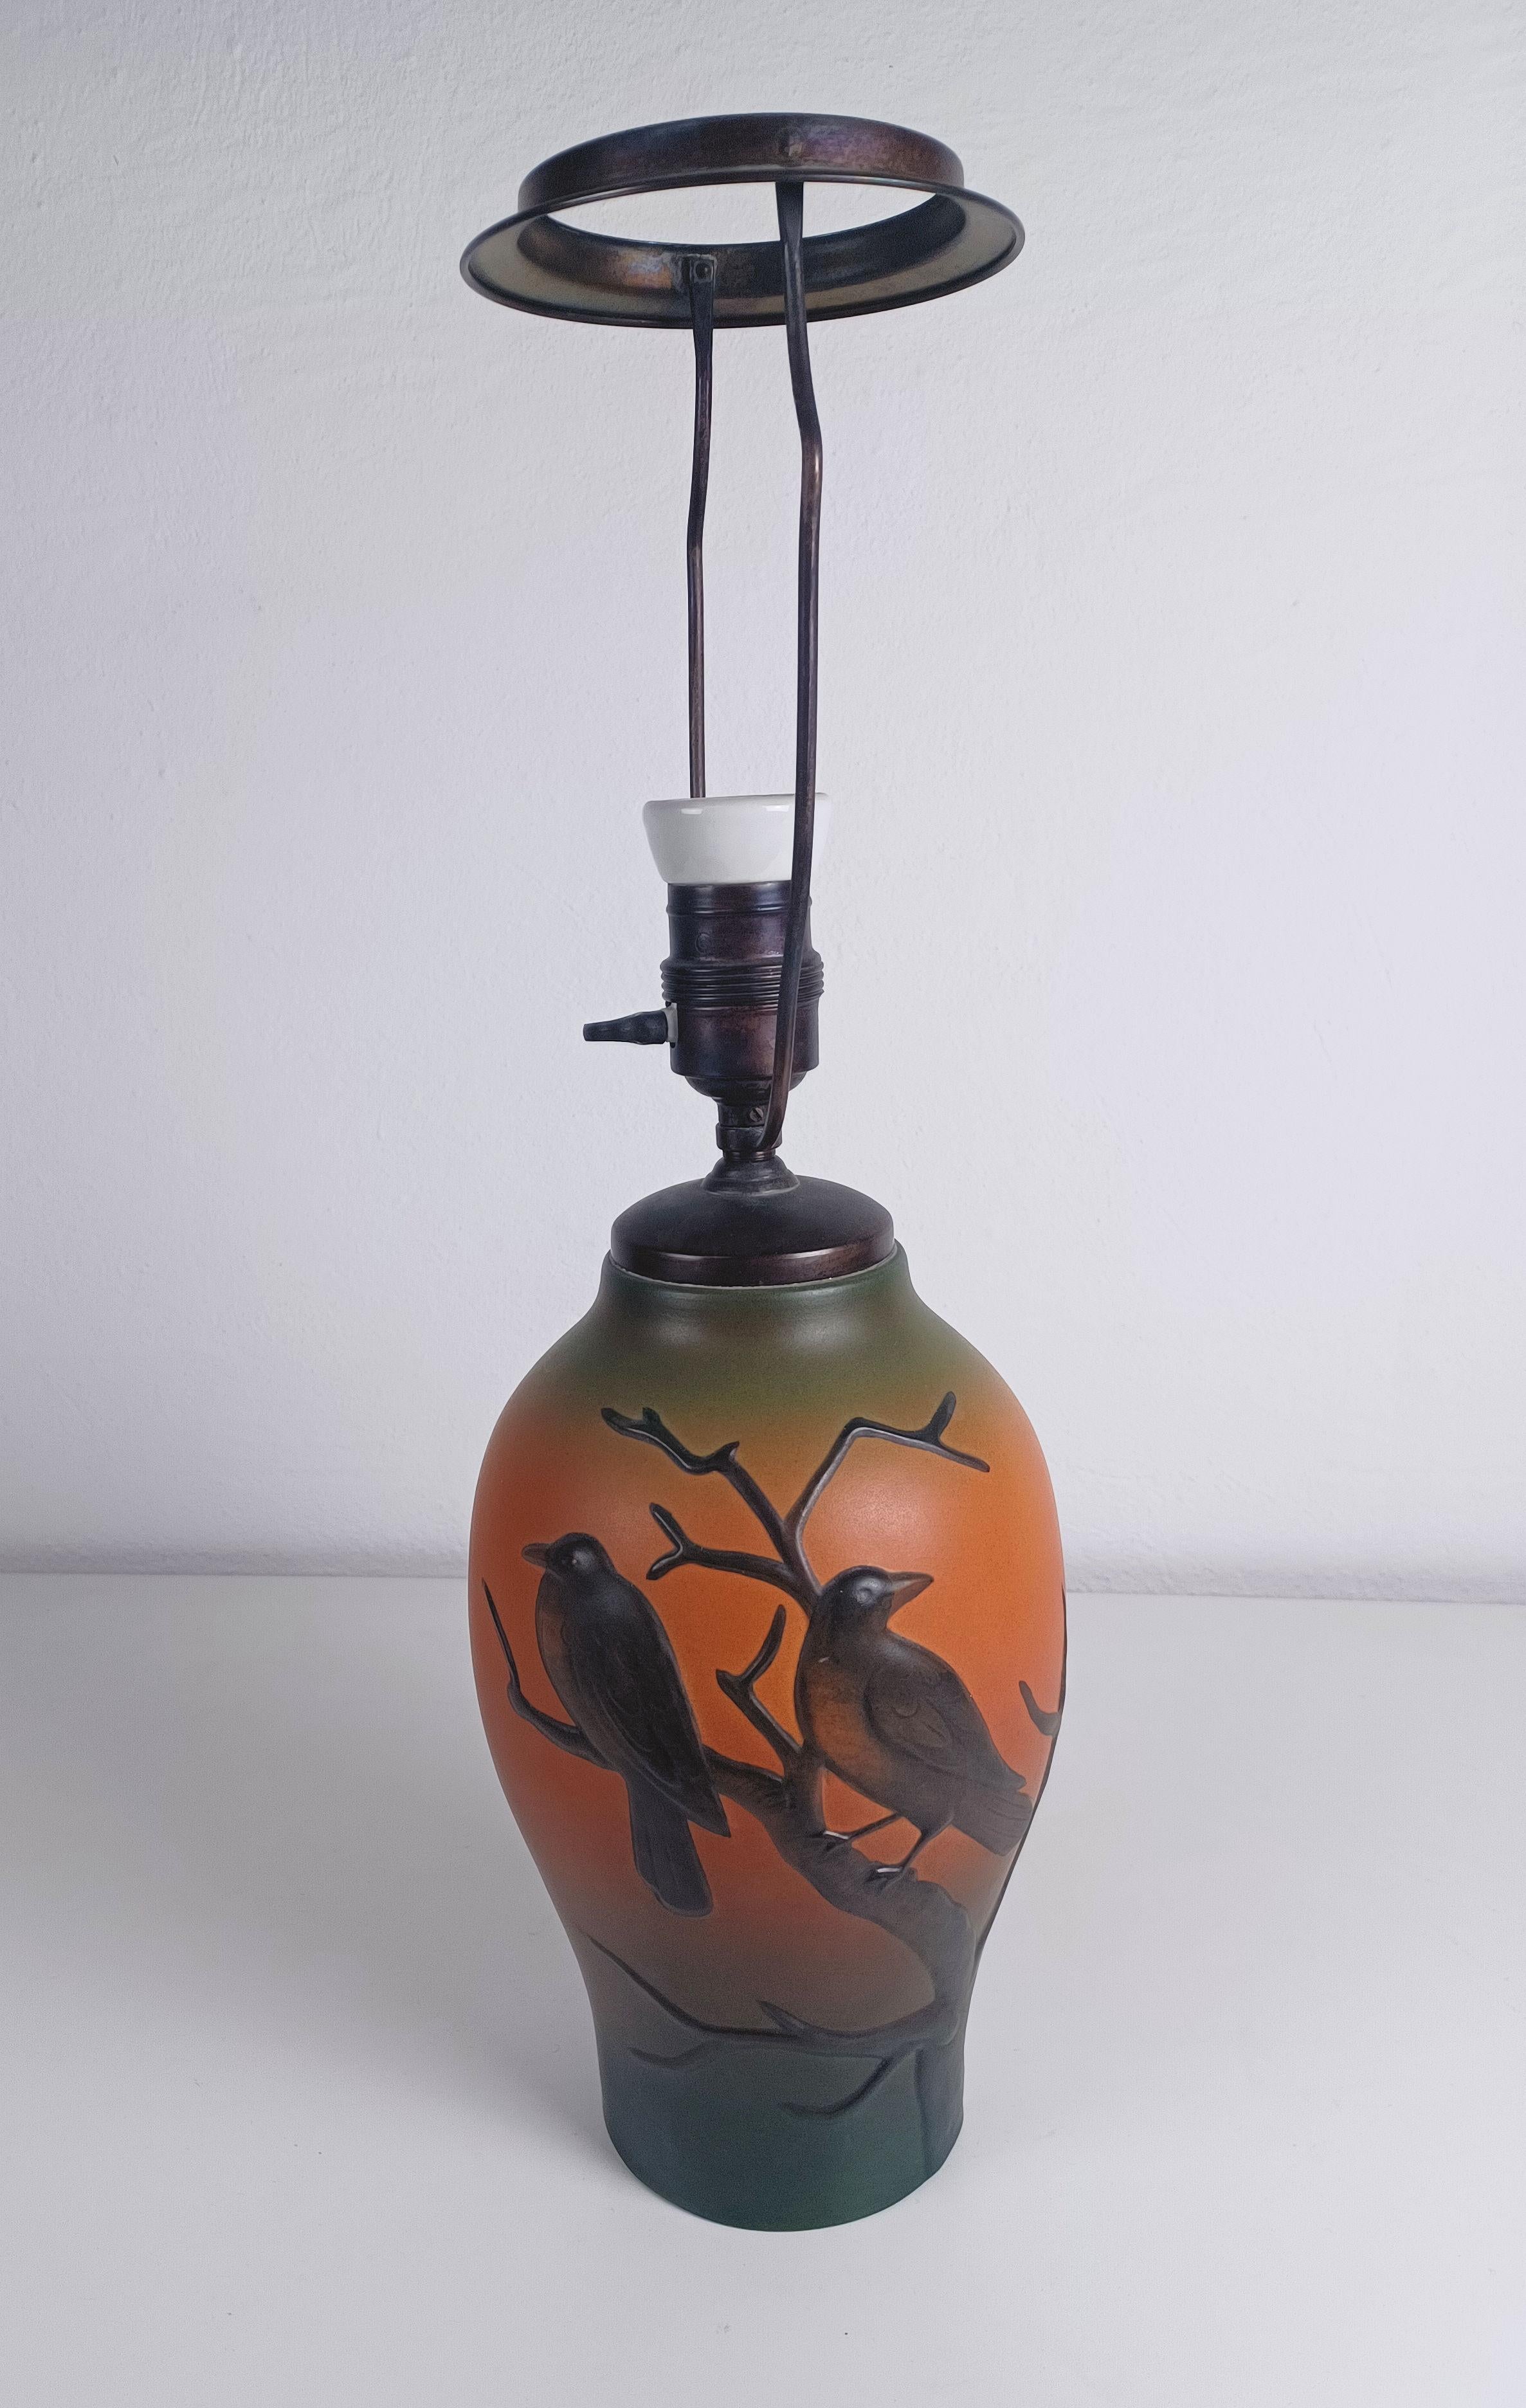 1920sArt Nouveau lampe de table artisanale par Georg Thylstrup pour P. Ipsen Enke

La lampe de table art nouveau, fabriquée à la main, a été conçue par eorg Thylstrup en 1927 et présente les caractéristiques suivantes  deux crabes assis sur une